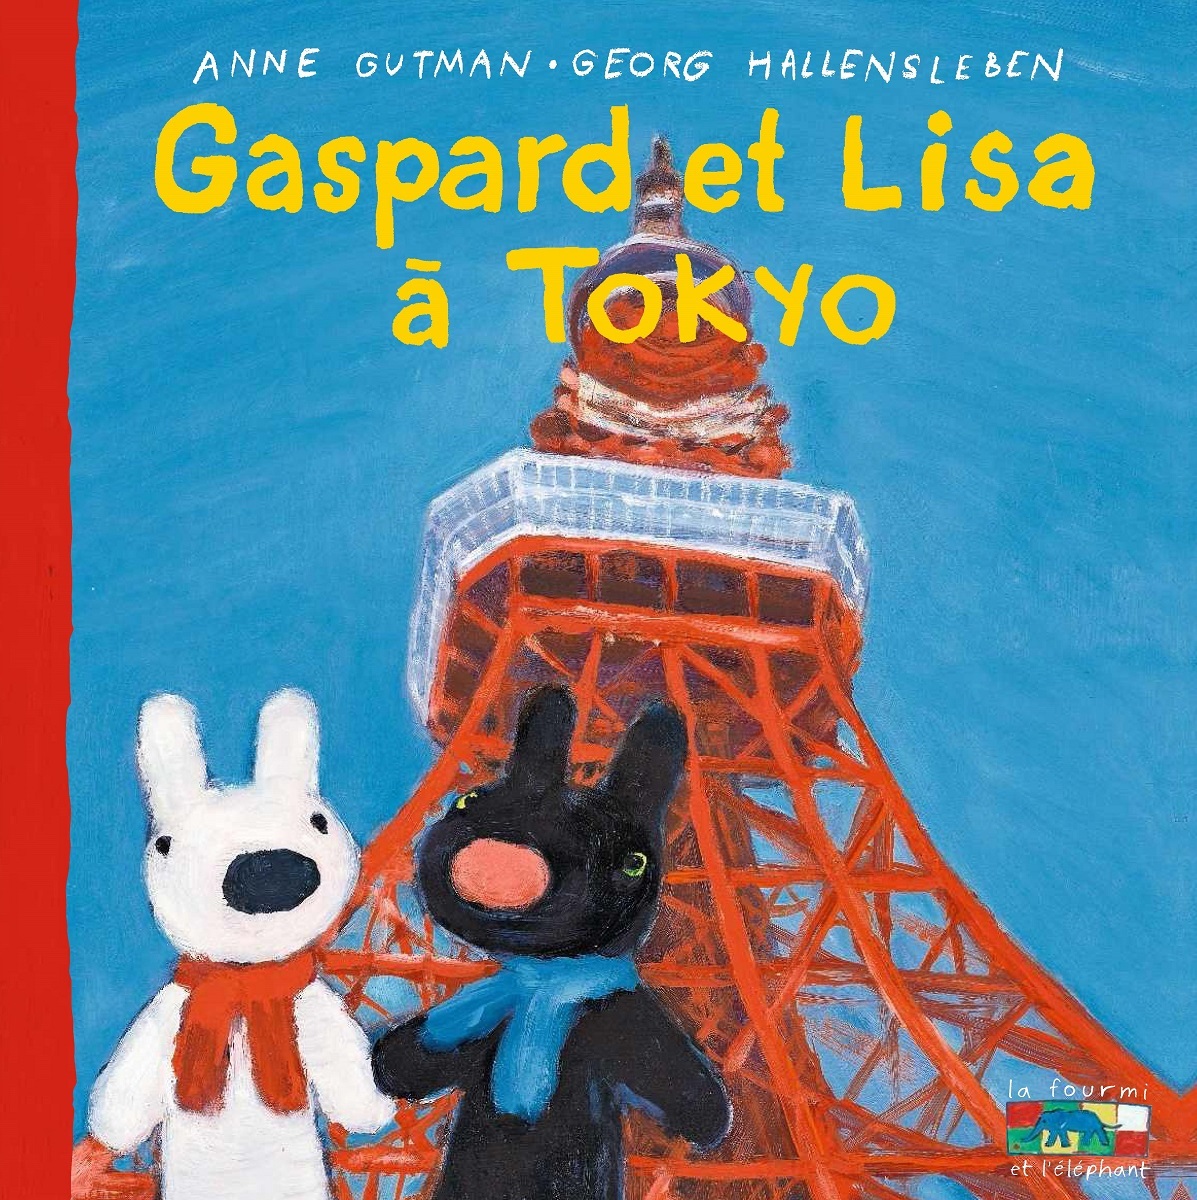 リサとガスパールの絵本の世界展 が開催に 東京が舞台となった新刊絵本の出版を記念して Spice エンタメ特化型情報メディア スパイス